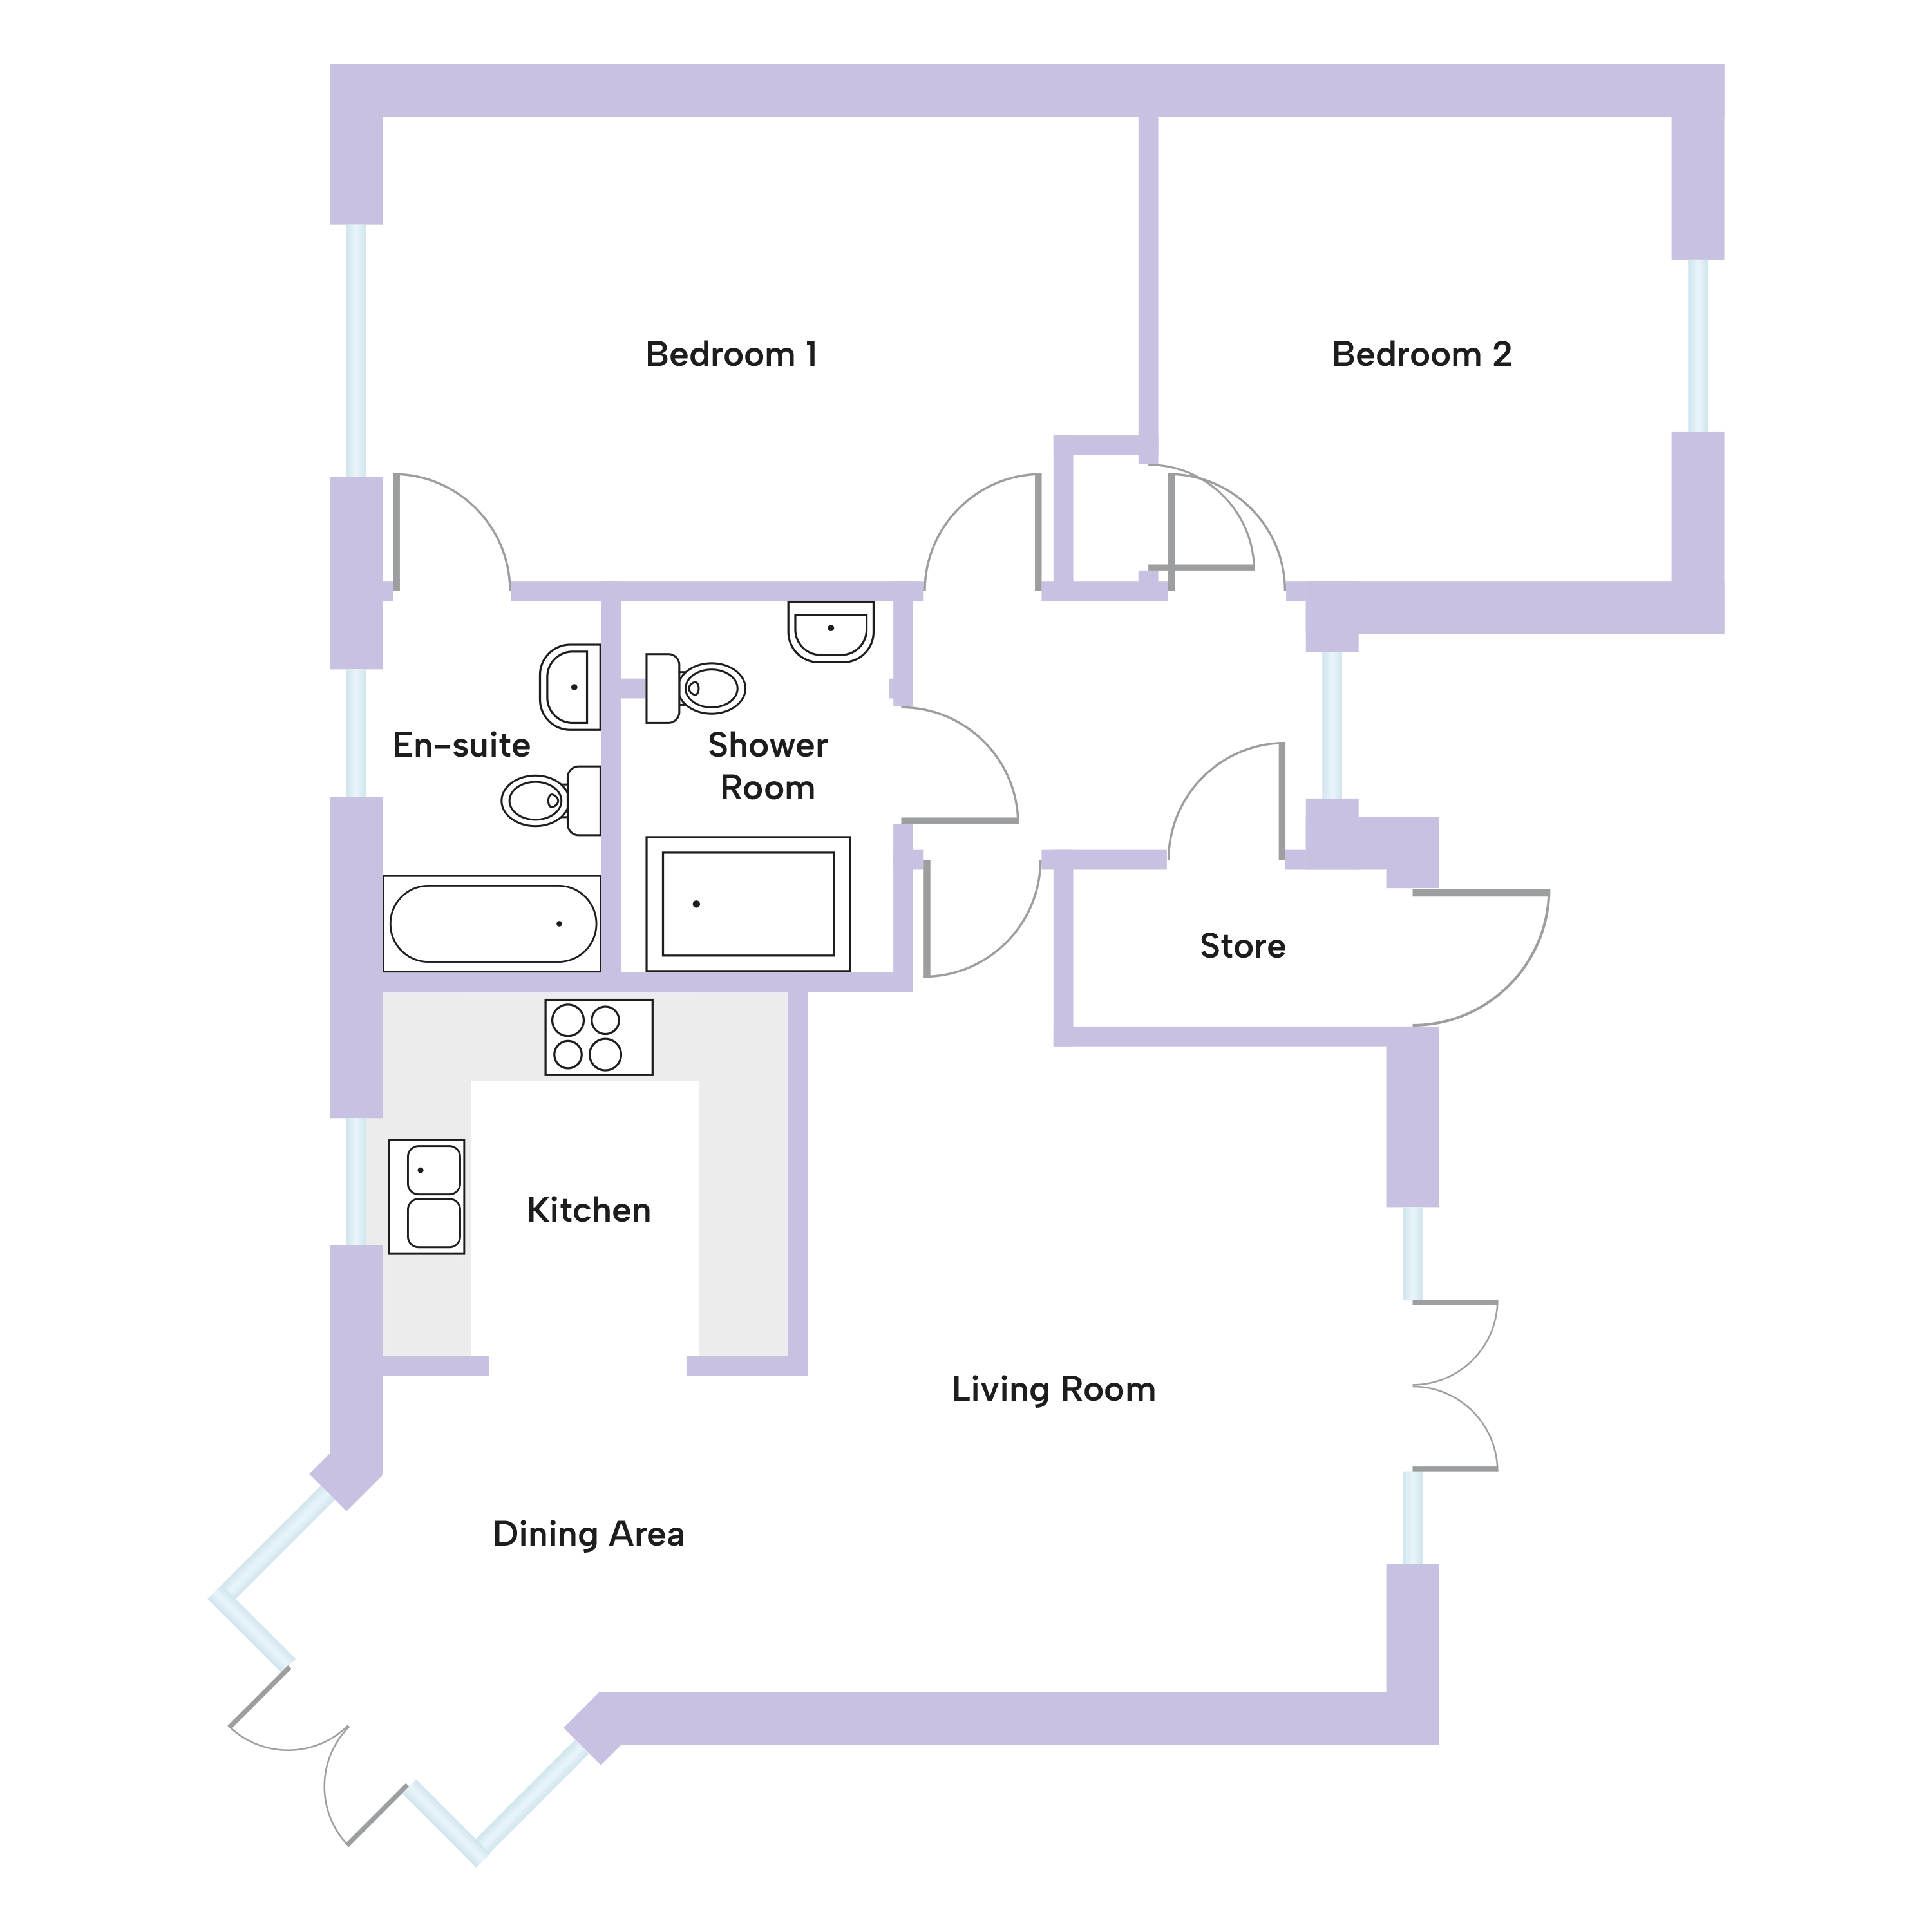 Floor plan of the Snowdrop bungalow